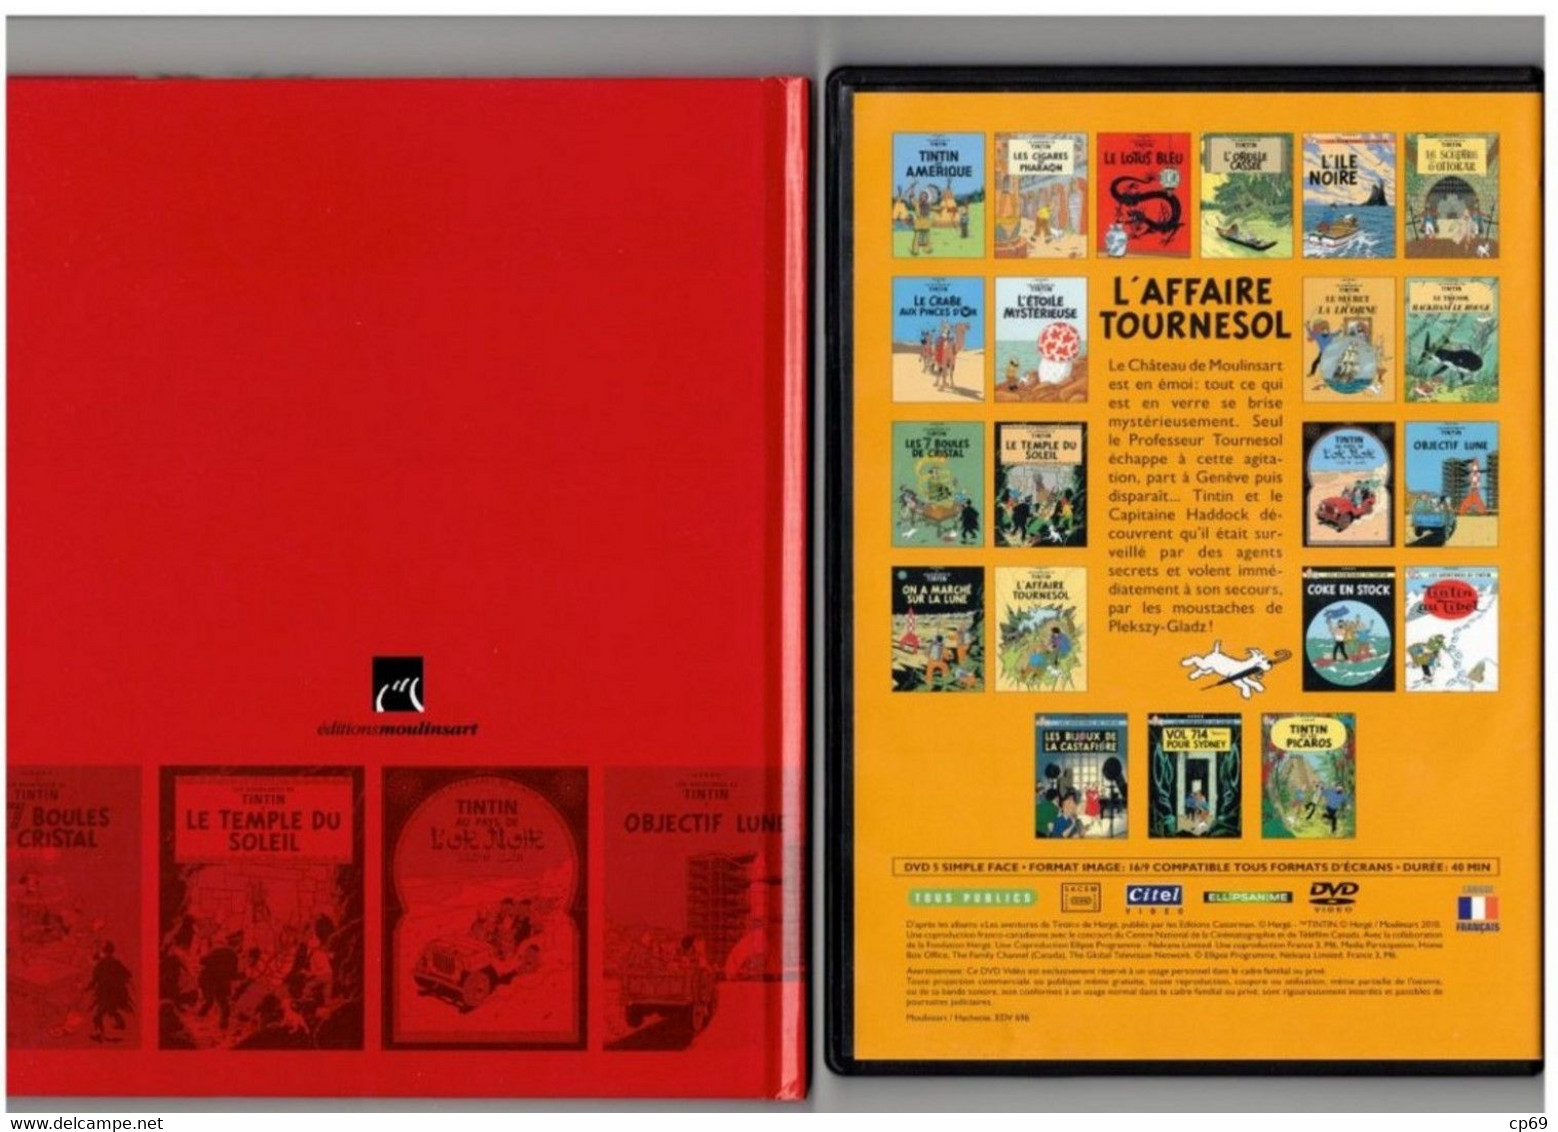 Tintin Hergé / Moulinsart 2010 Milou Chien Dog Cane L'Affaire Tournesol N°15 Capitaine Haddock DVD + Livret Explicatif - Dessin Animé